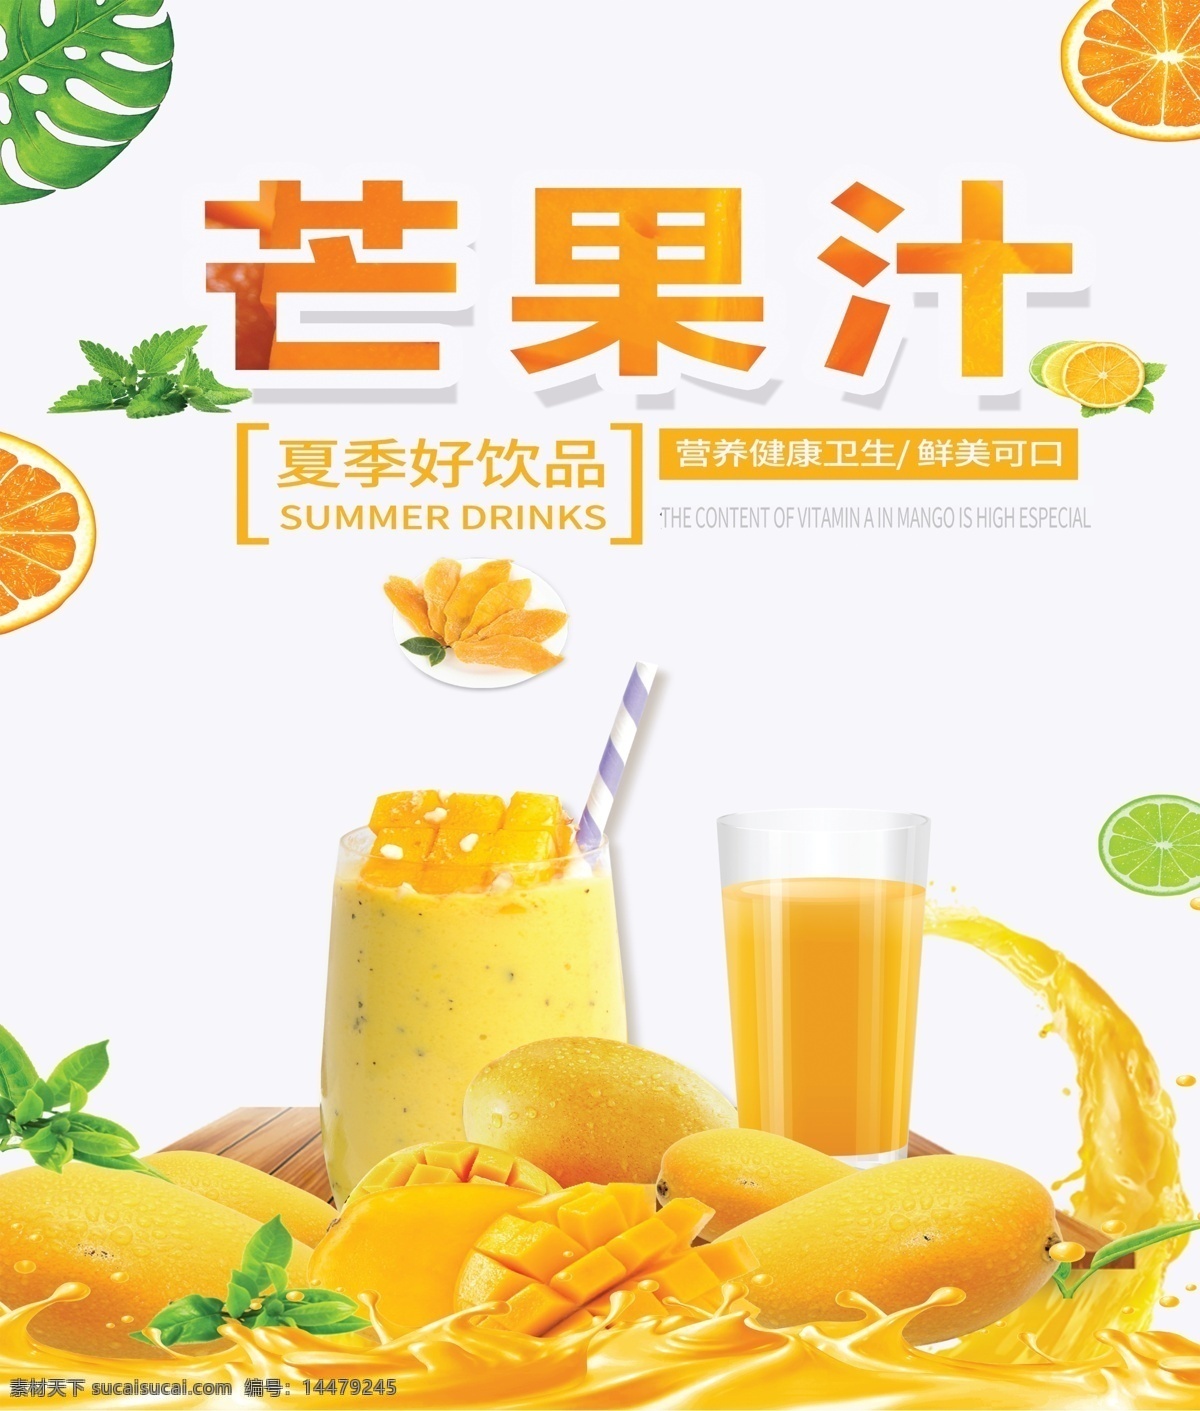 芒果汁图片 芒果 芒果汁 海报 展板 芒果汁海报